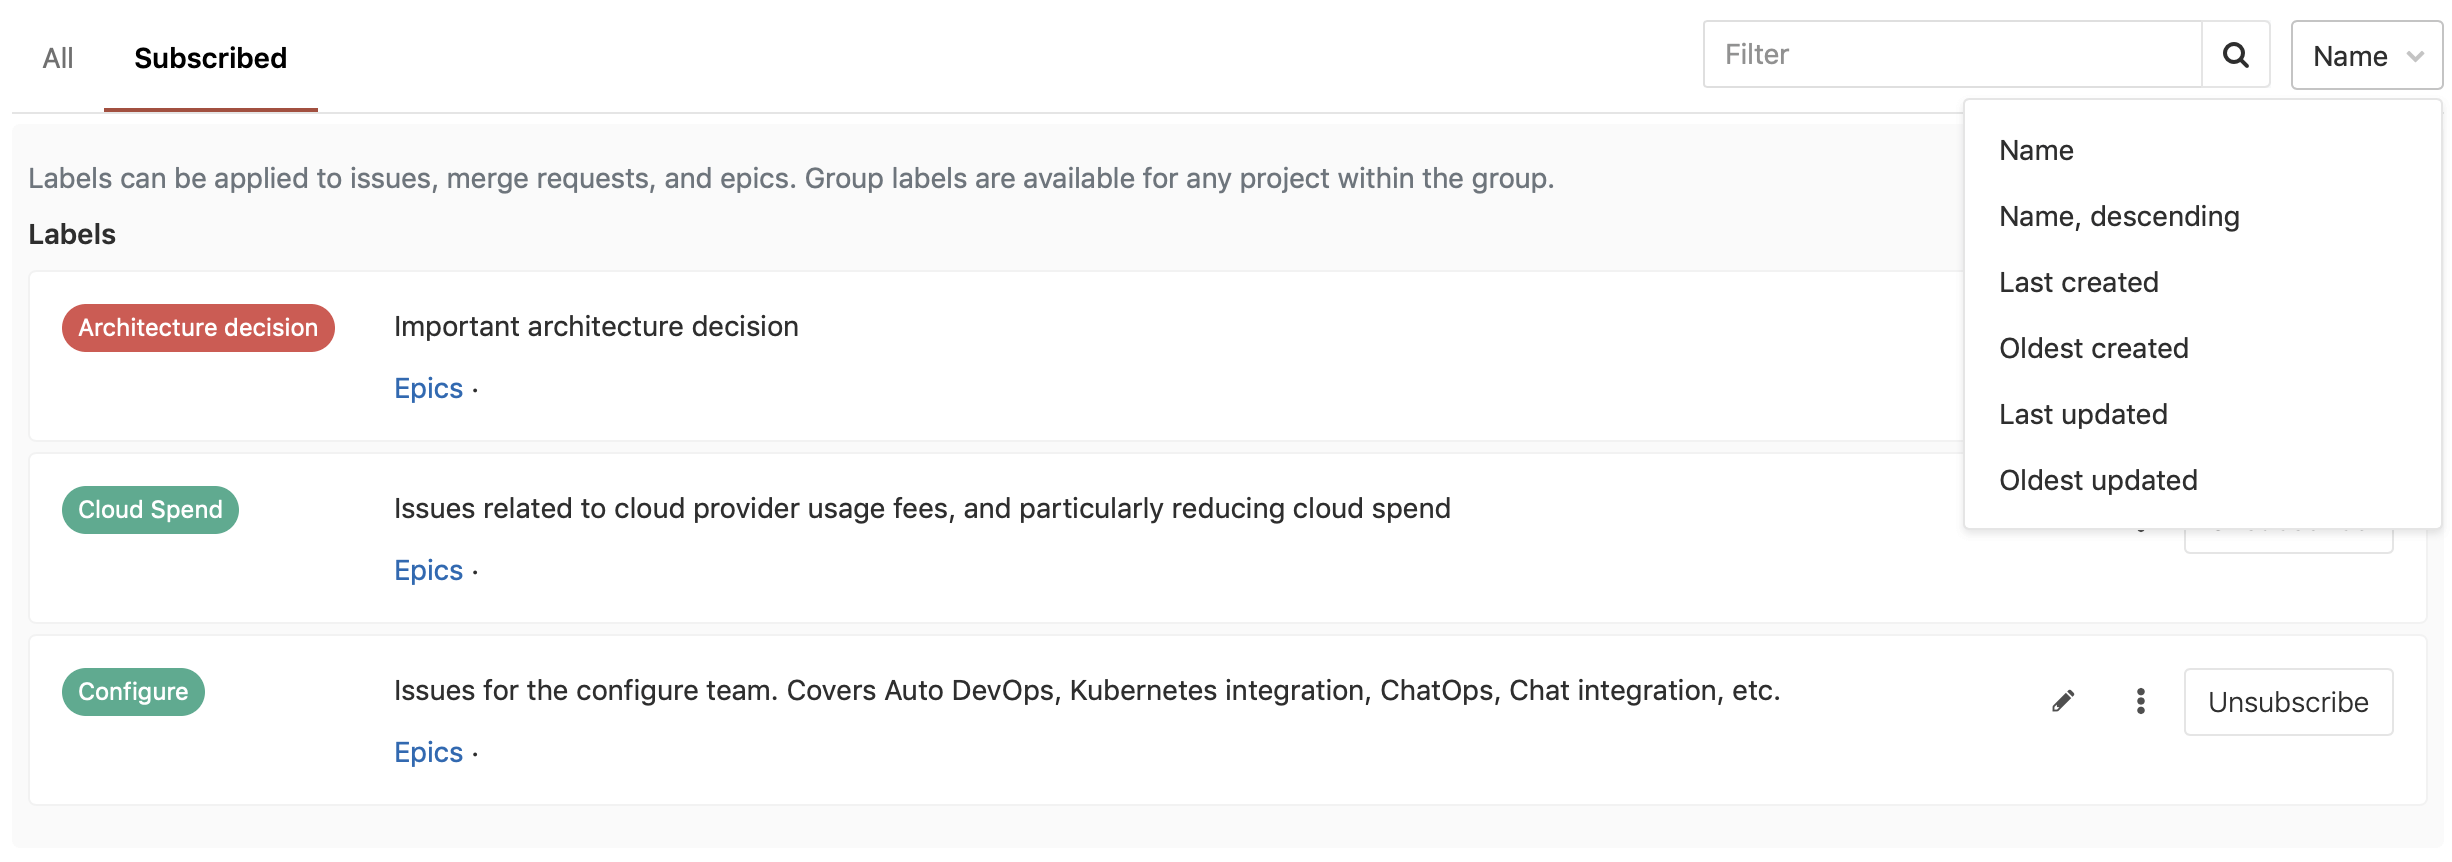 Новый выпуск GitLab 11.4 с рецензированием запросов слияния и флажками функций - 14